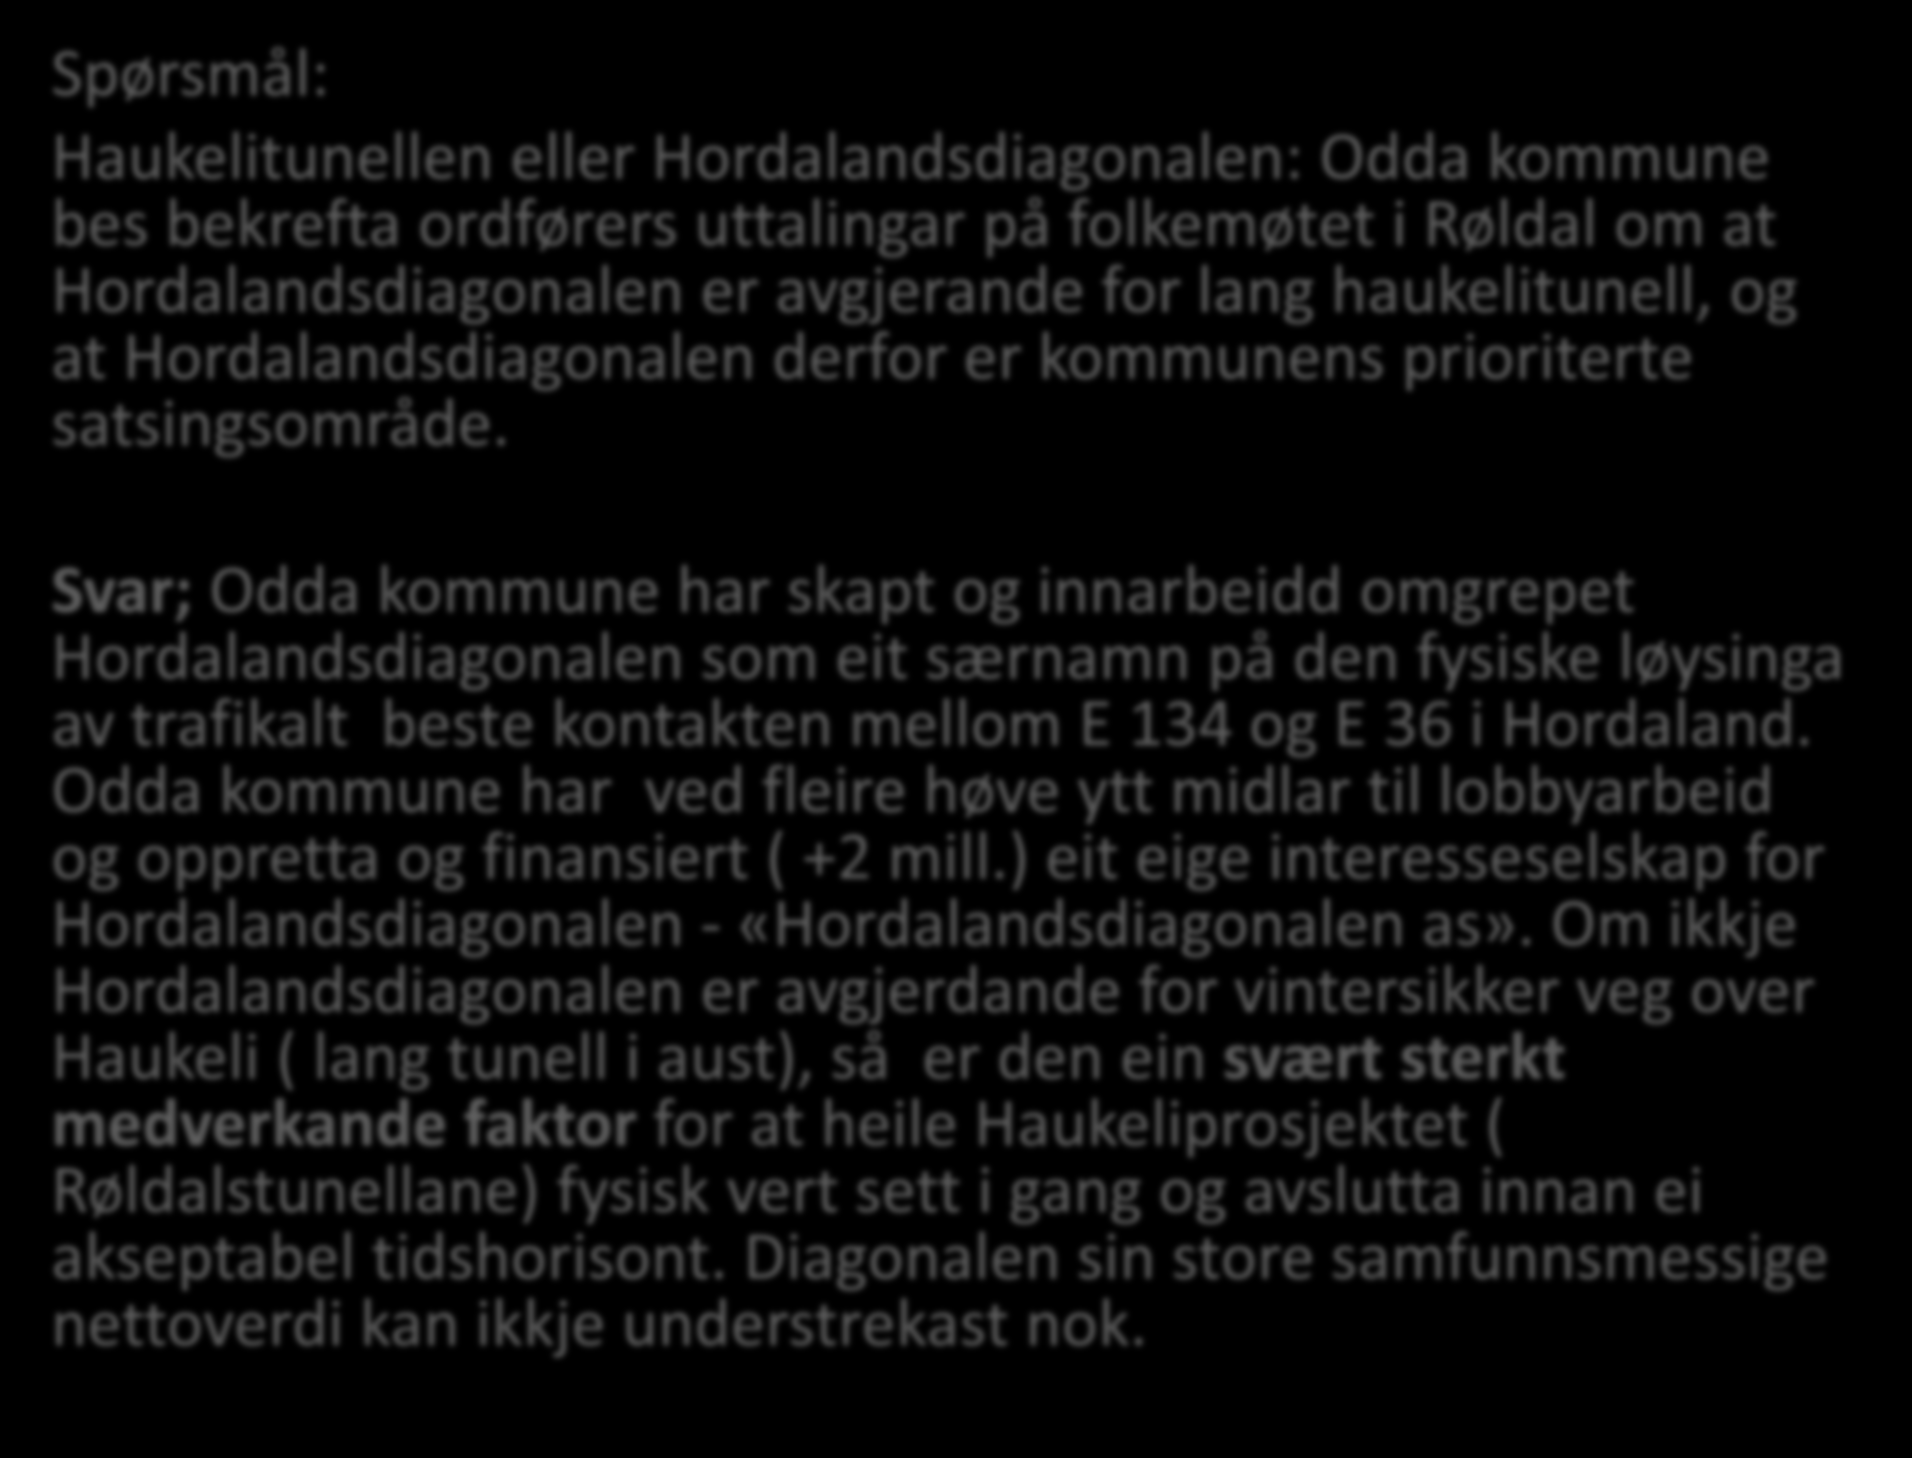 Spørsmål: Haukelitunellen eller Hordalandsdiagonalen: bes bekrefta ordførers uttalingar på folkemøtet i Røldal om at Hordalandsdiagonalen er avgjerande for lang haukelitunell, og at